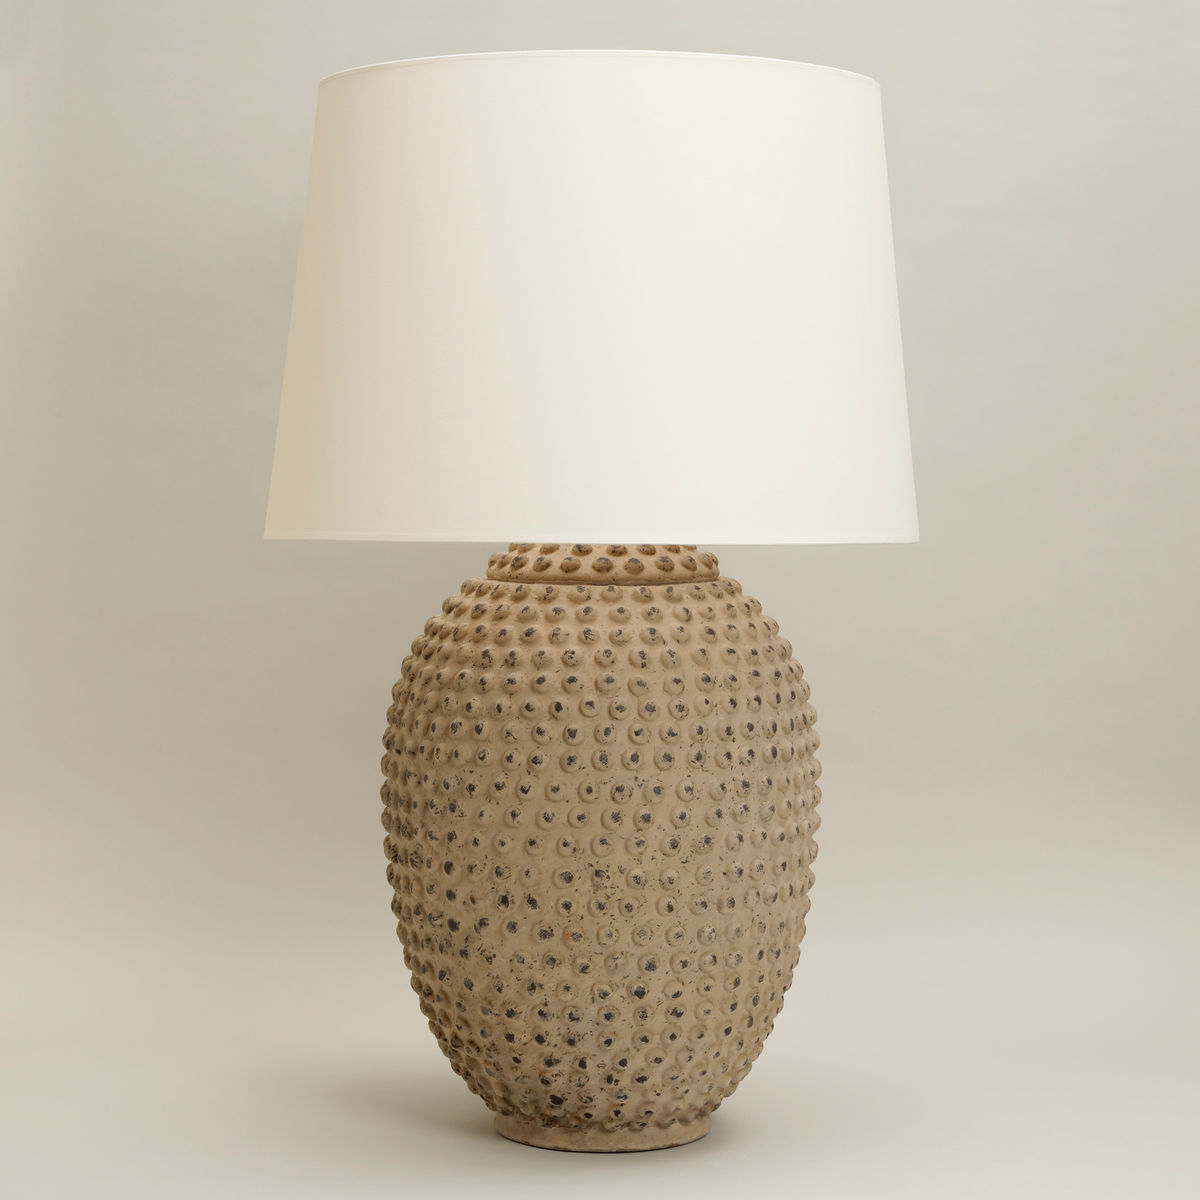 Serengeti Table Lamp / Vaughan